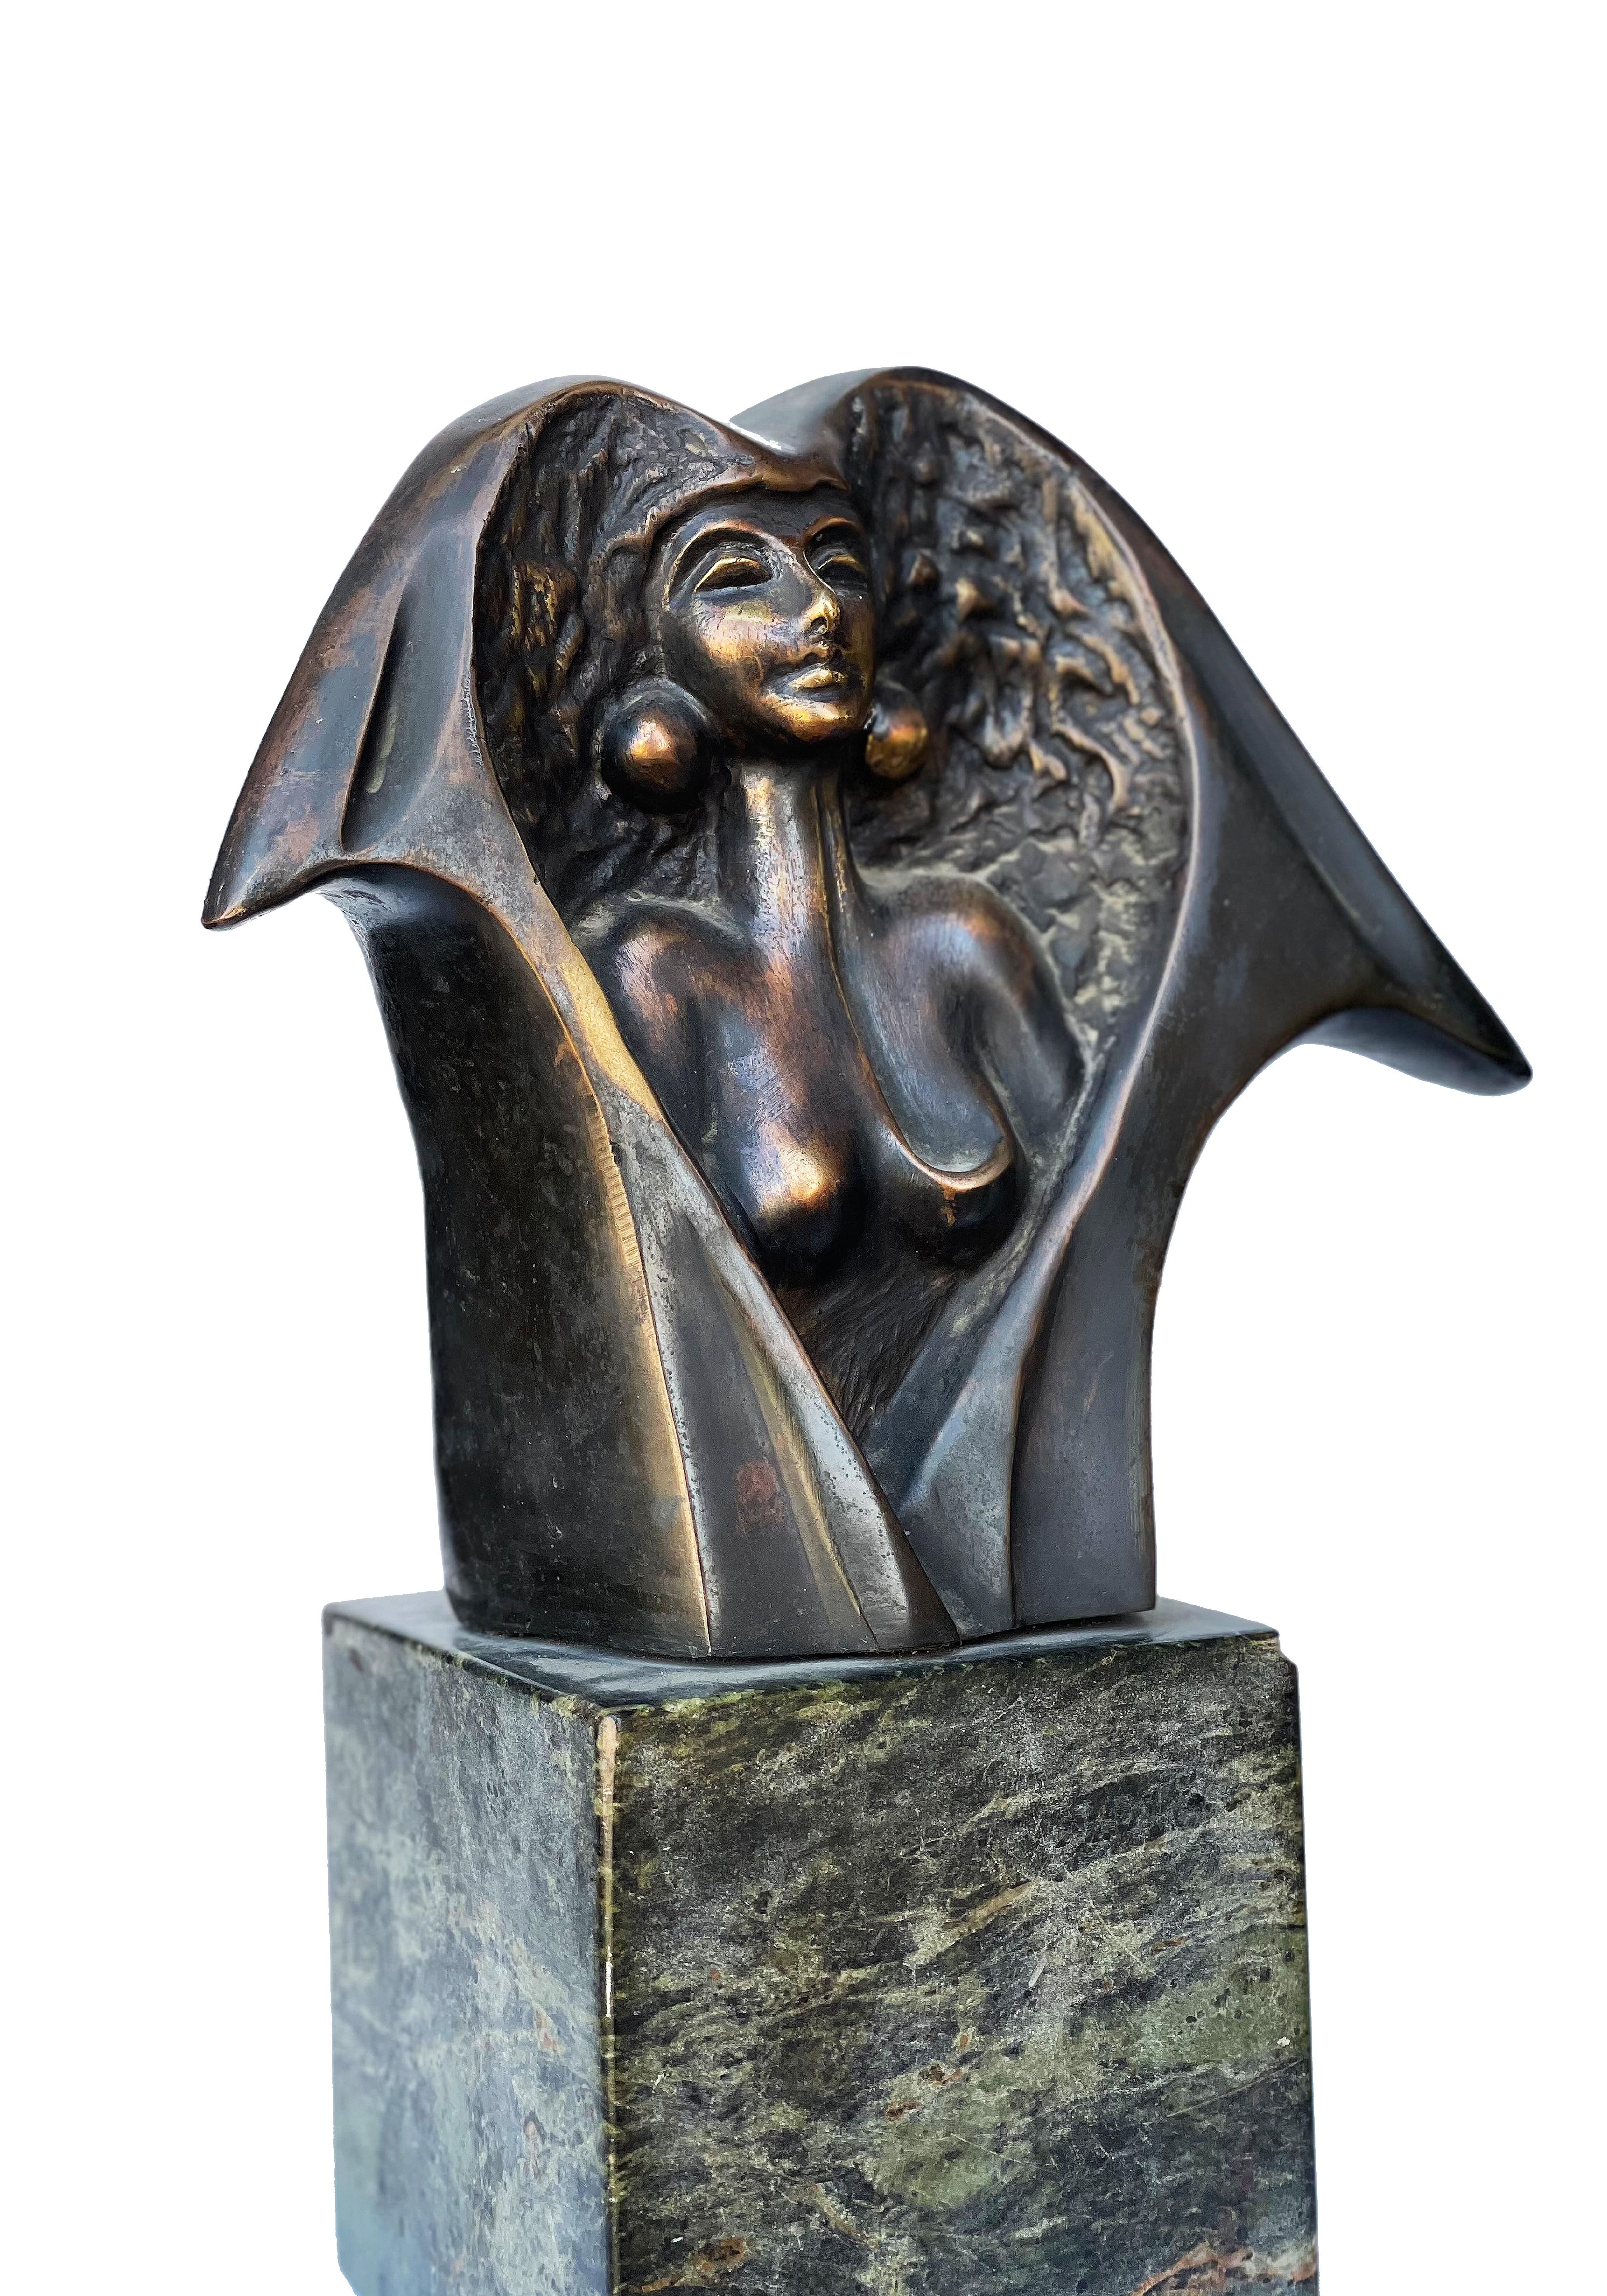 "Renaissance" Bronze und Marmor Skulptur 13" x 9" von Ibrahim Abd Elmalak

Singvogel, 2005
Bronze und Marmor 
33 x 23 cm, Signiert und datiert


Skulpturen, die zumeist seine charakteristischen Figuren weiblicher Formen und Gefühle darstellen - ein